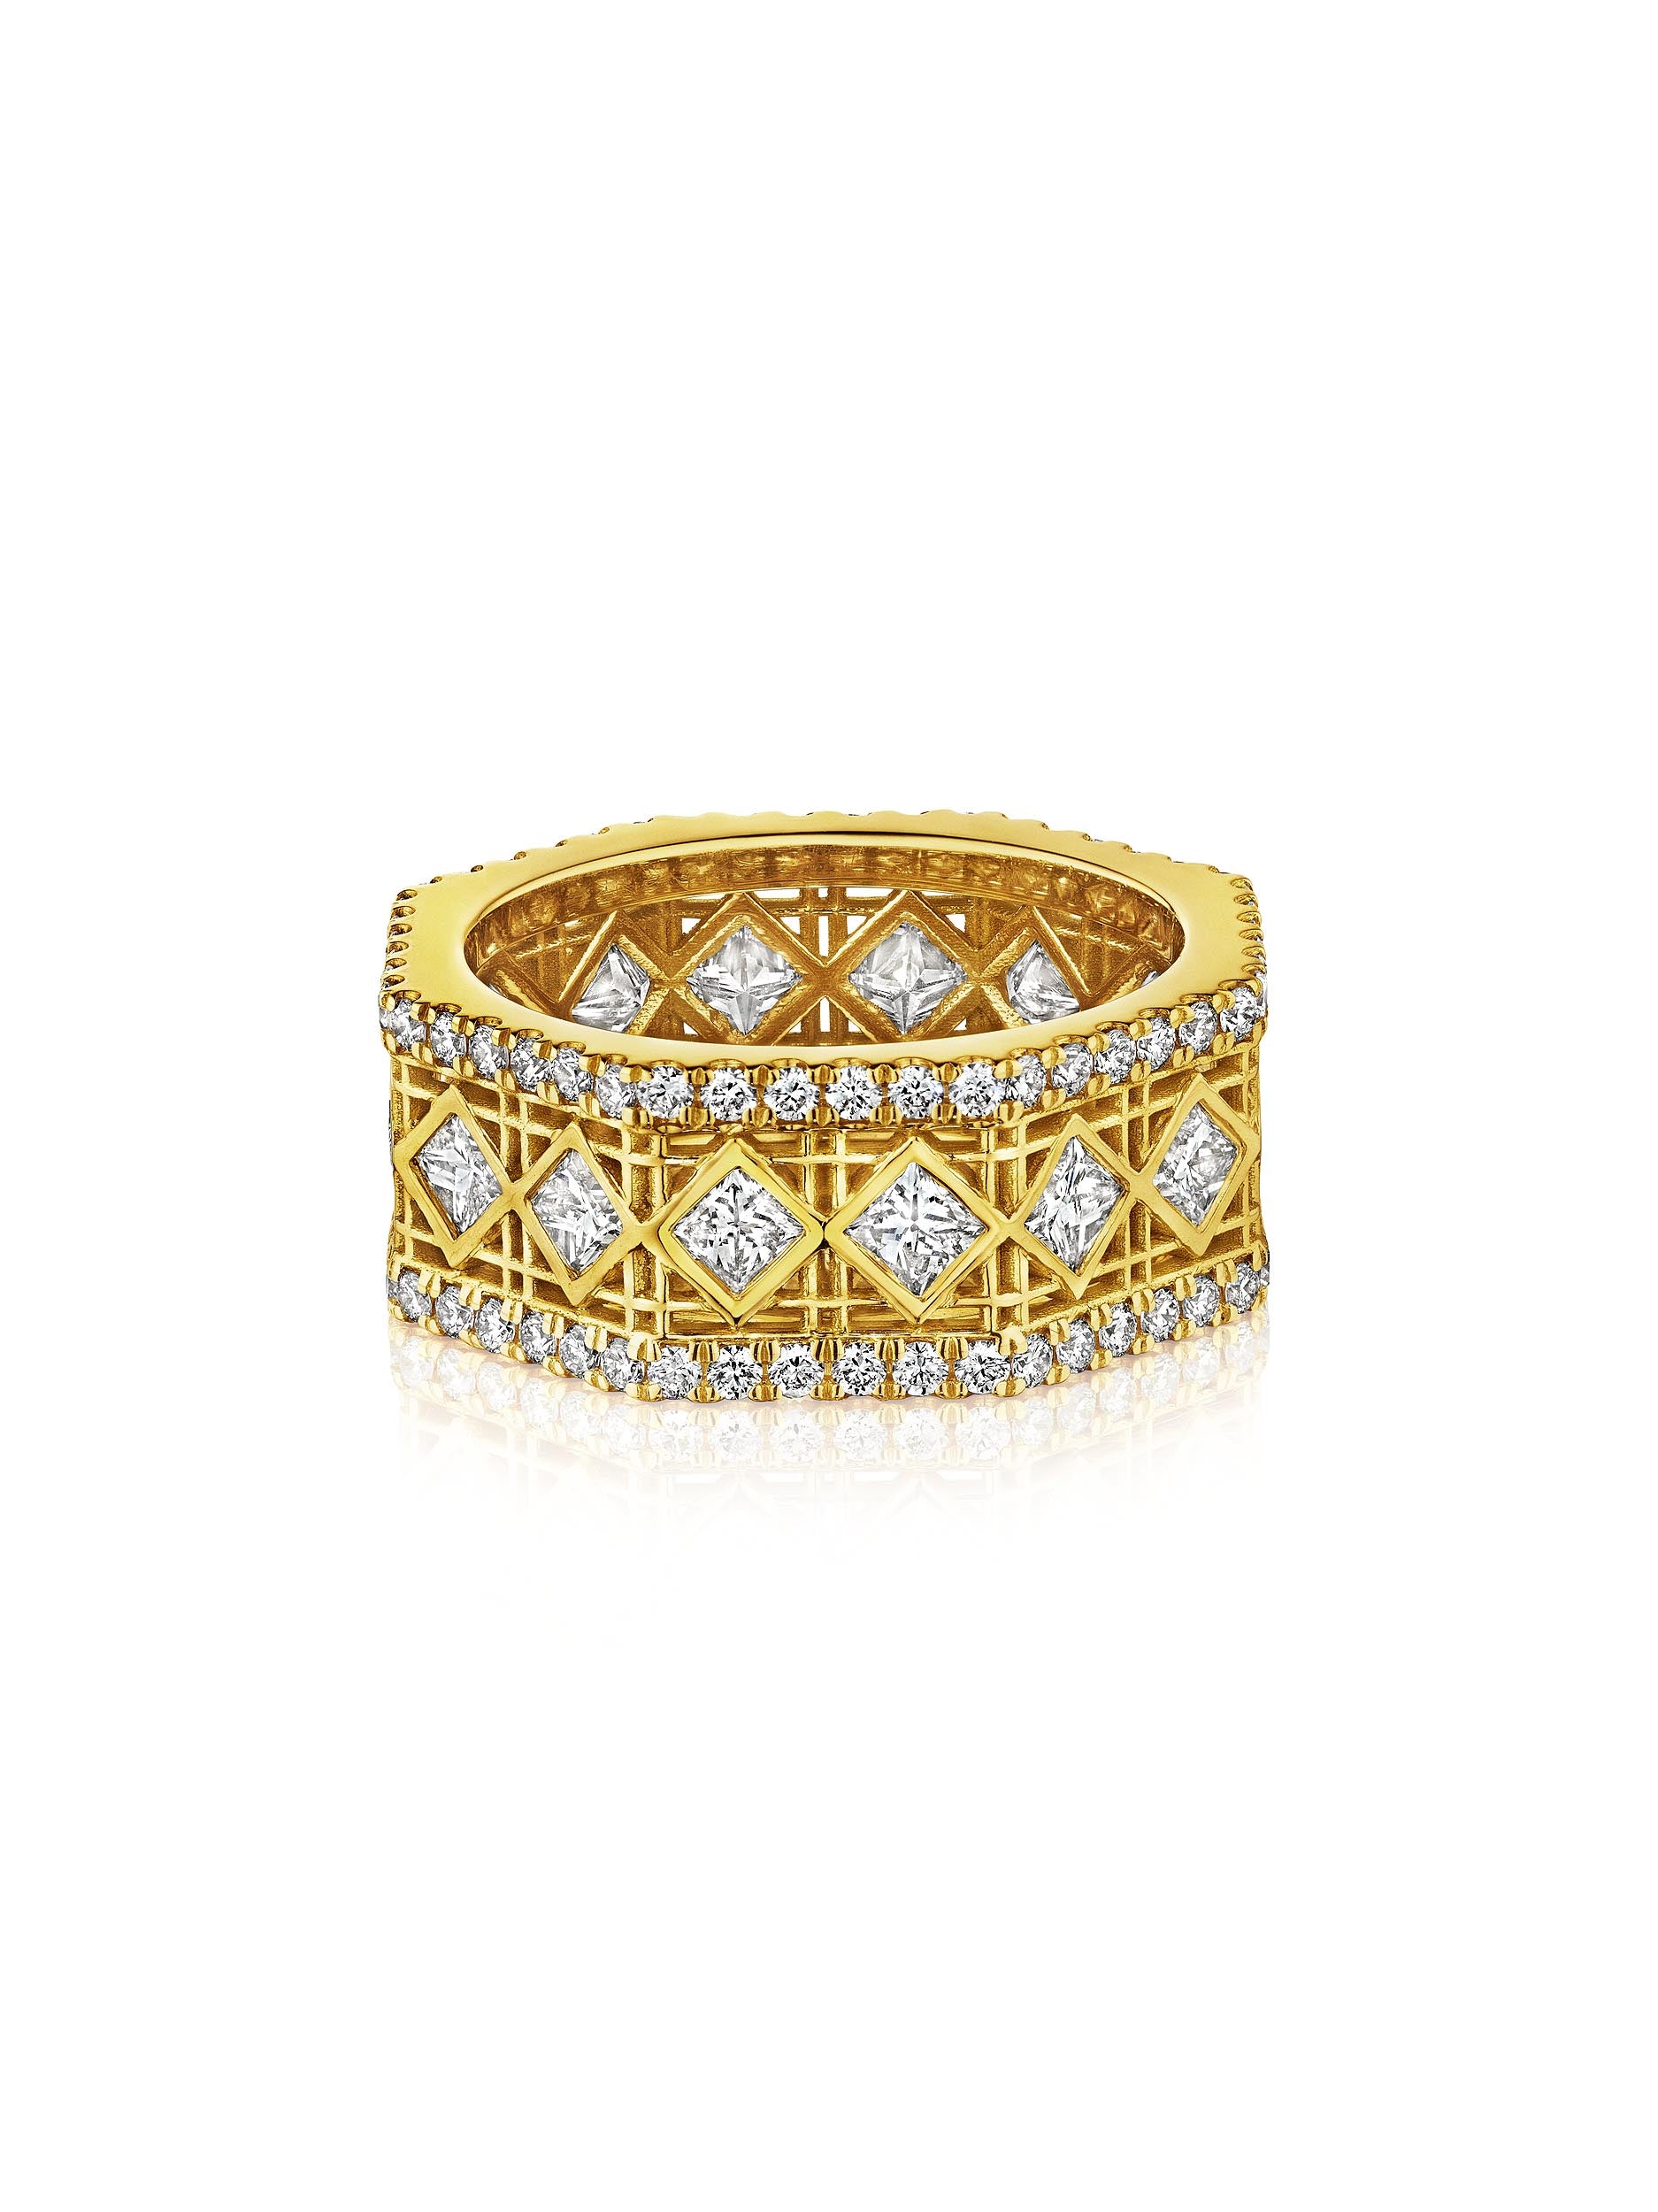 DouDou Ring, 18K Yellow Gold, Pavé Diamonds And Princess Cut